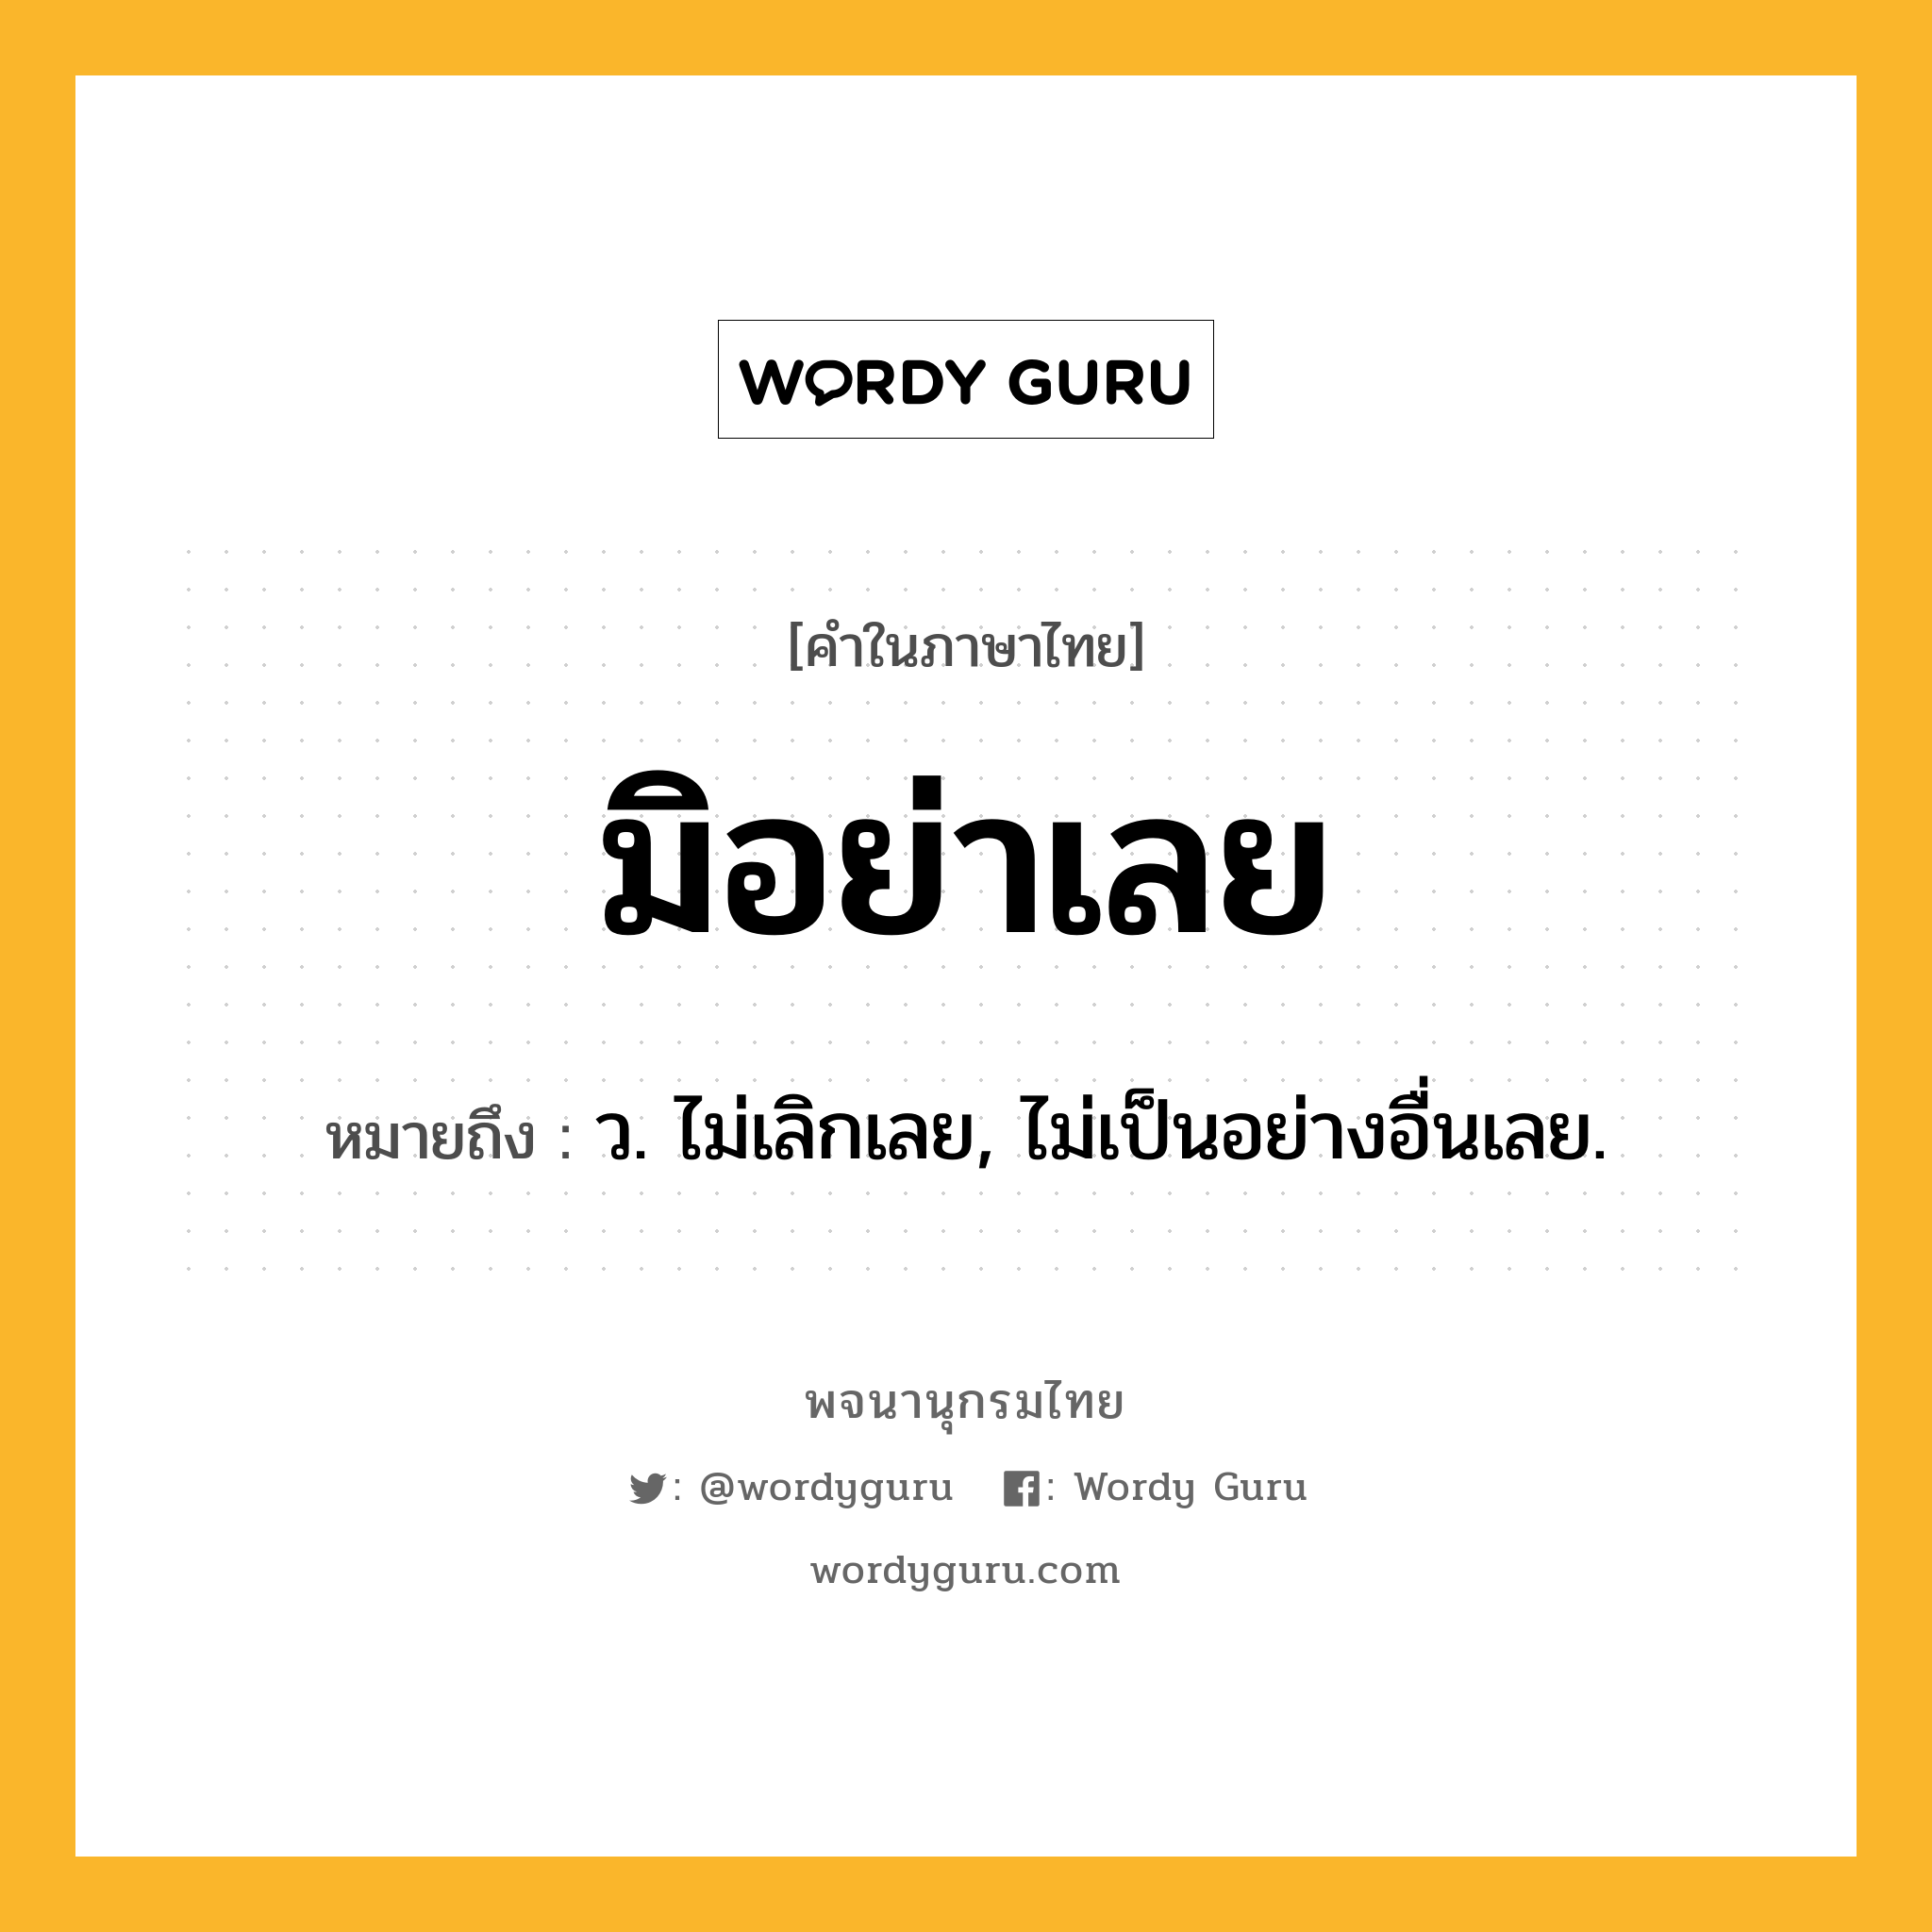 มิอย่าเลย หมายถึงอะไร?, คำในภาษาไทย มิอย่าเลย หมายถึง ว. ไม่เลิกเลย, ไม่เป็นอย่างอื่นเลย.